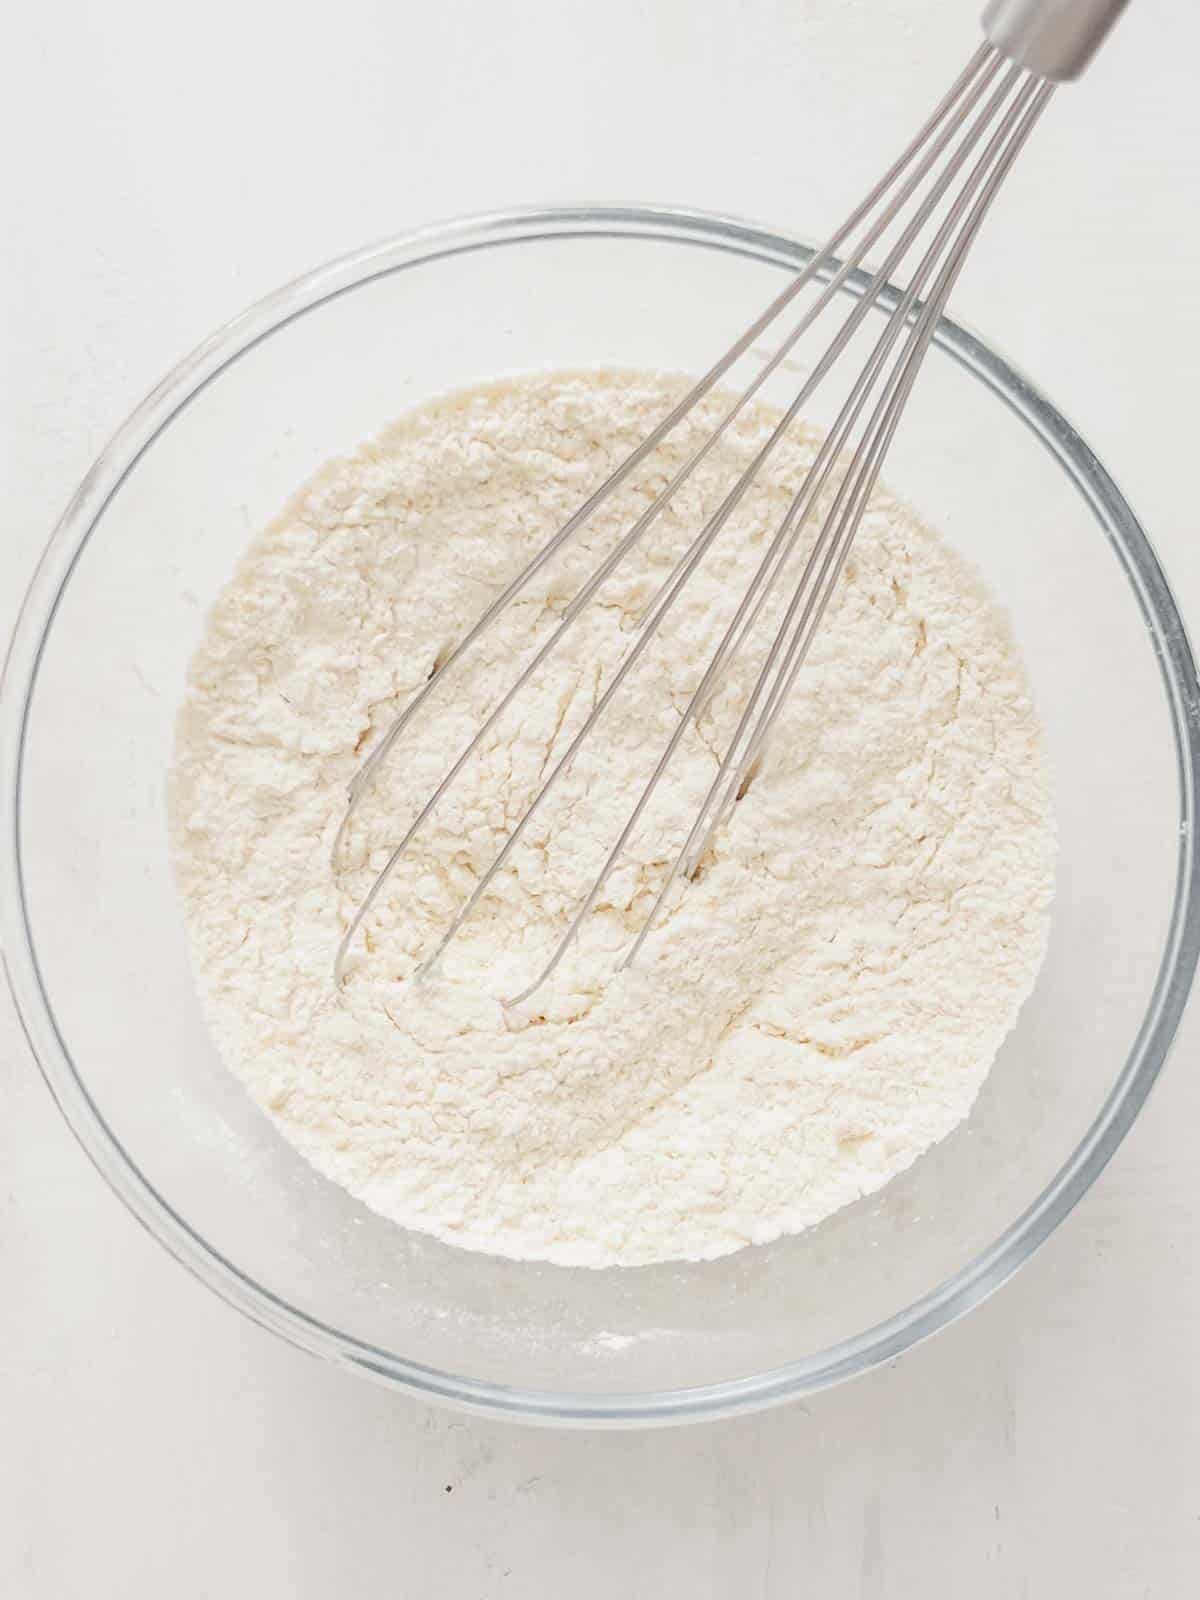 flour, sugar, and baking powder in a bowl